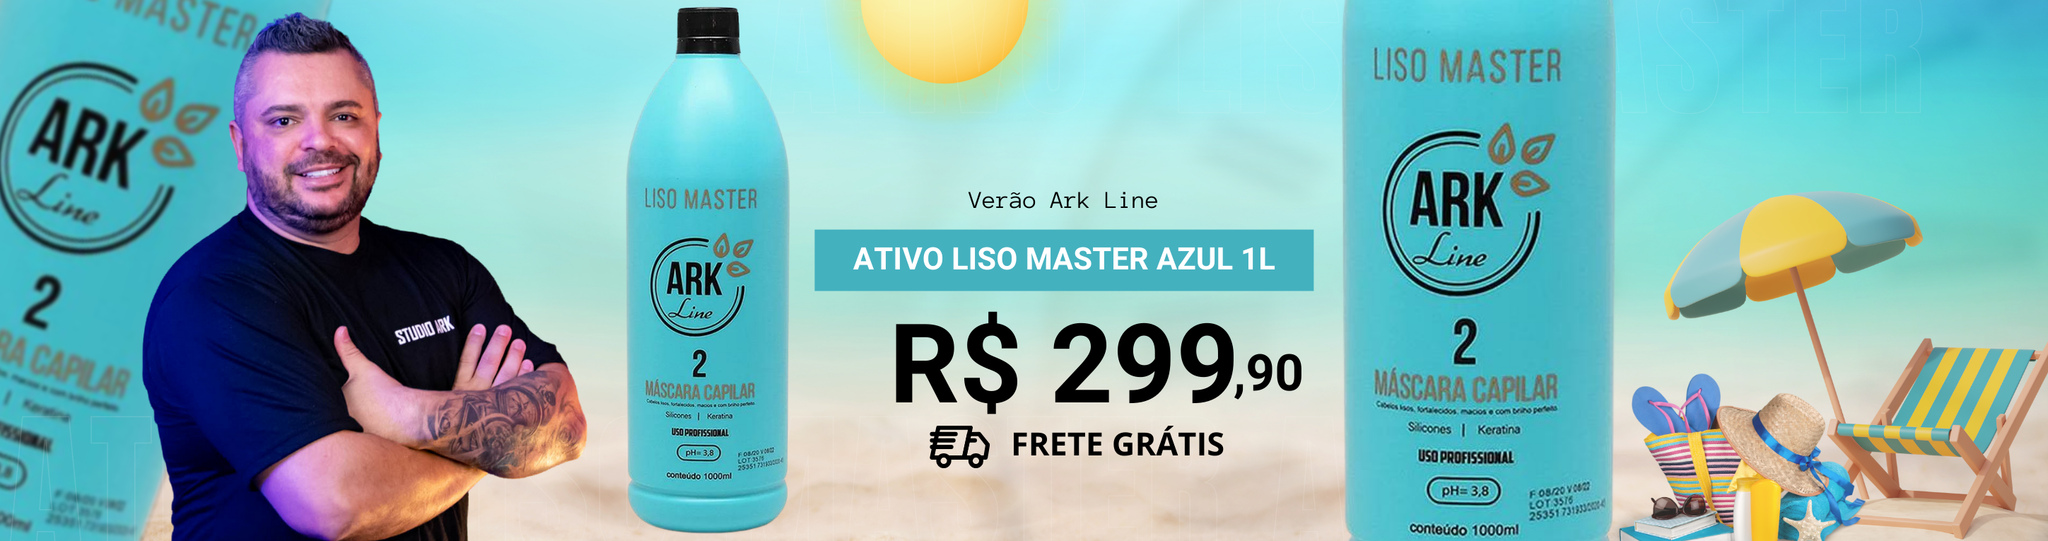 Ativo Liso Master Azul 1L - Promoção